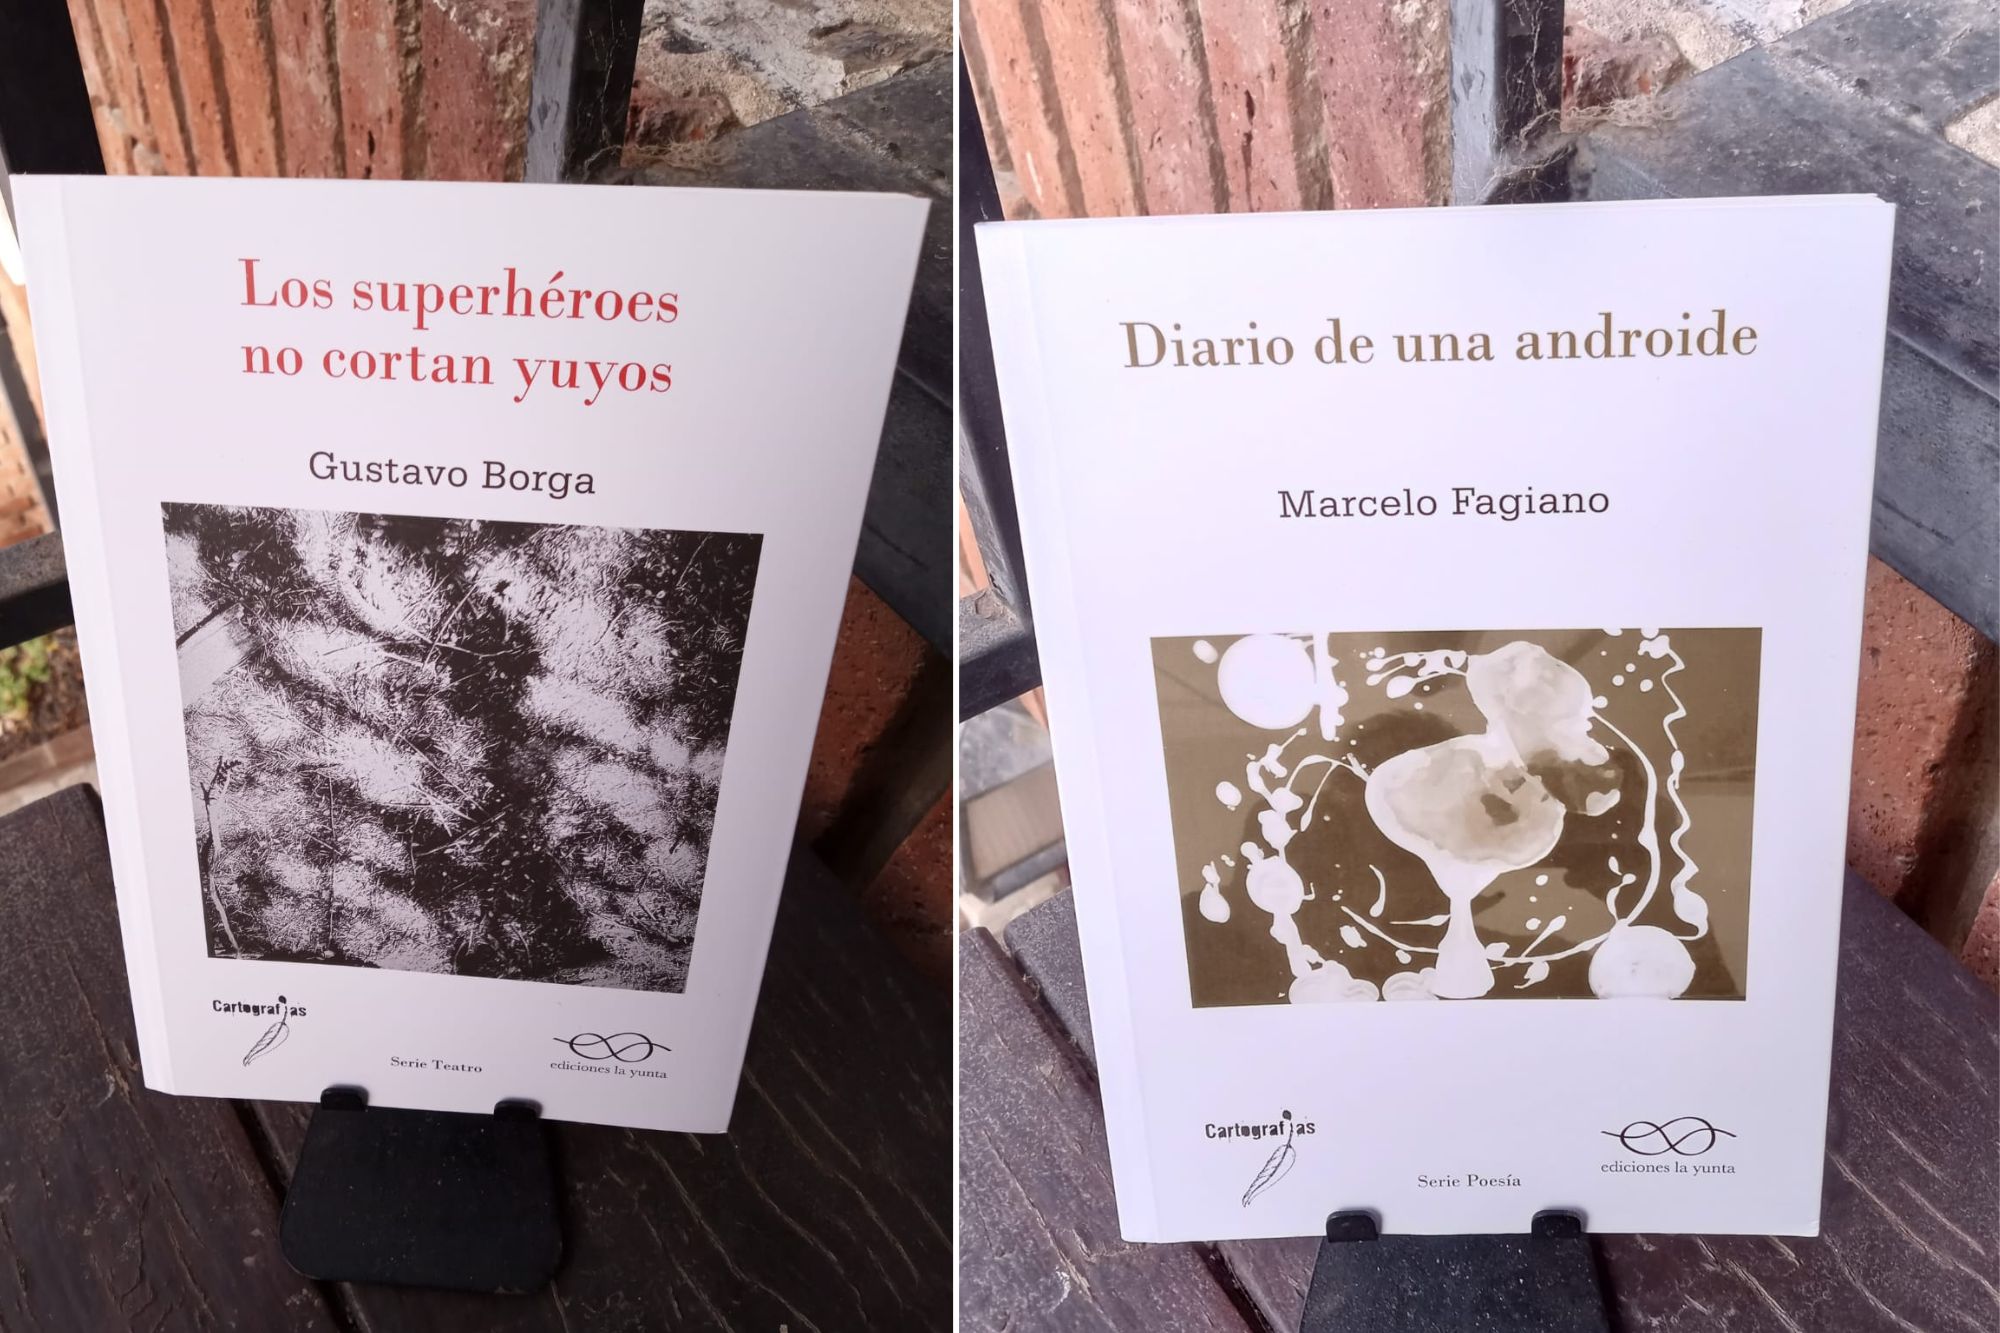 Dos libros en coedición con Ediciones La Yunta.